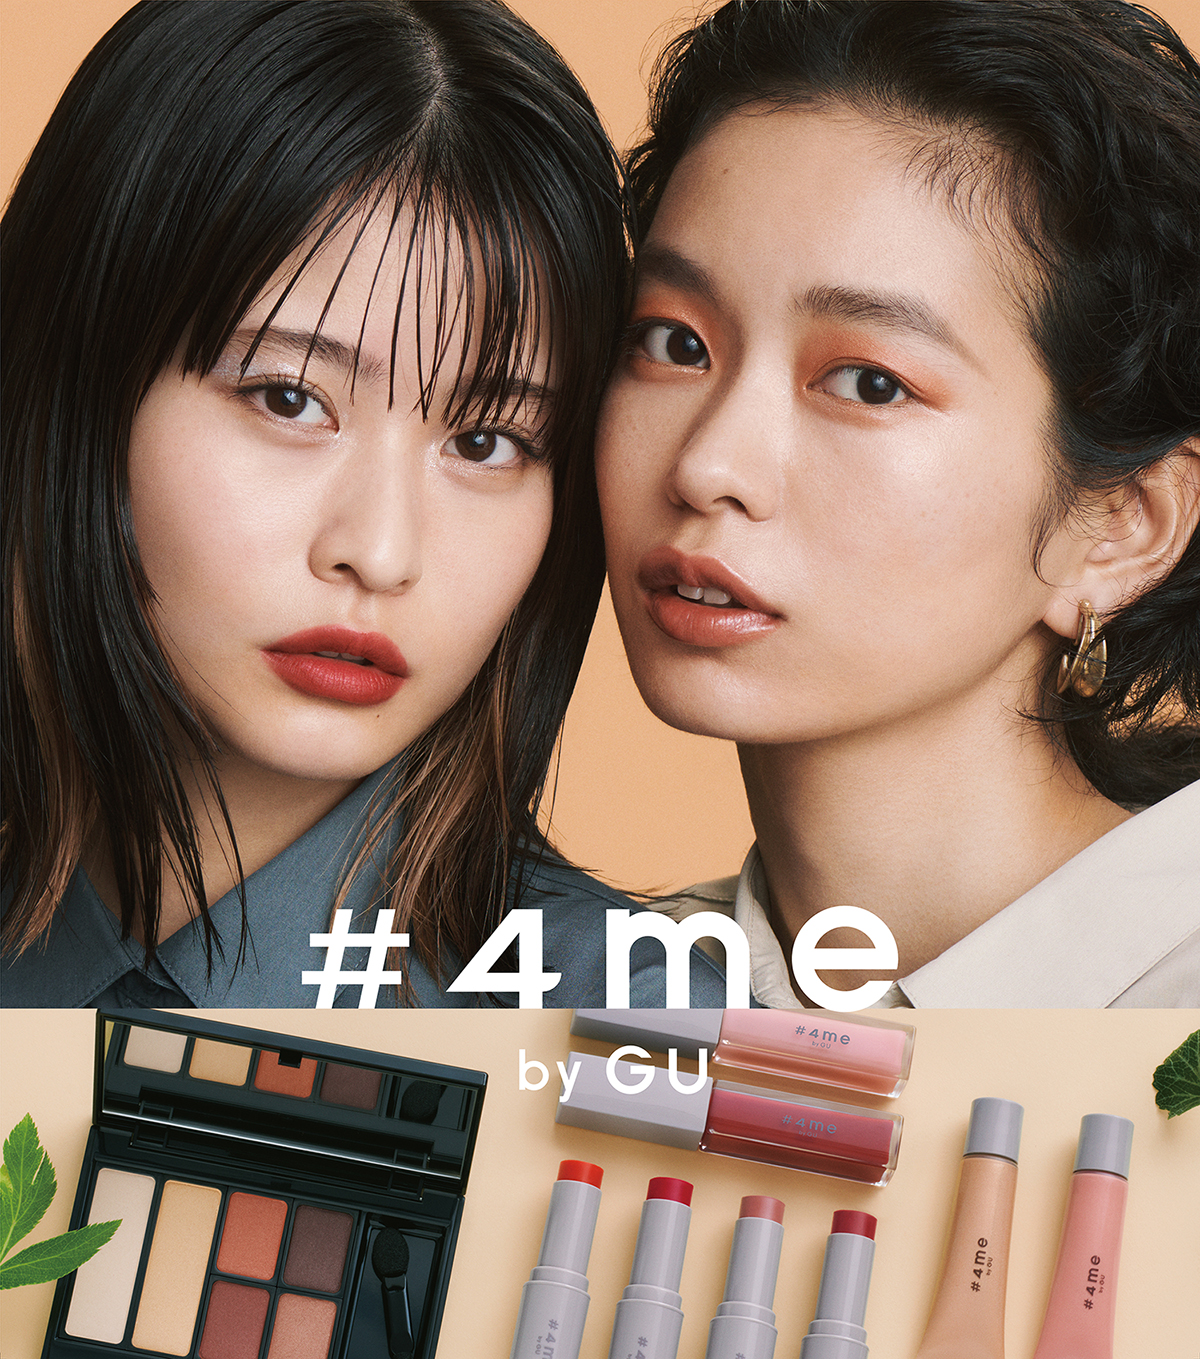 ジーユーから、まったく新しいコスメブランドが誕生 -「#4me by GU」 9